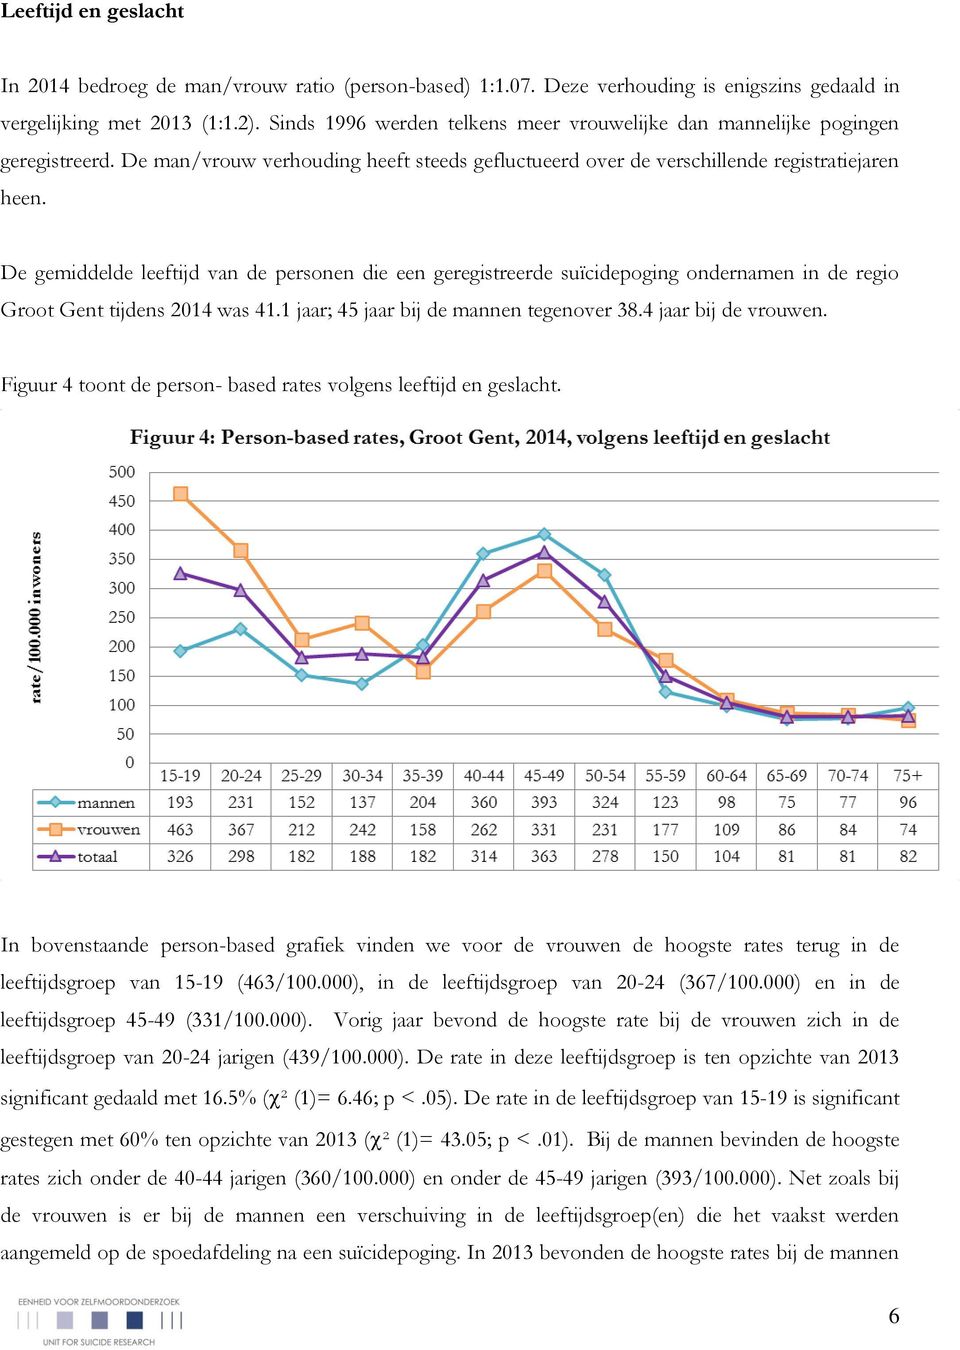 De gemiddelde leeftijd van de personen die een geregistreerde suïcidepoging ondernamen in de regio Groot Gent tijdens 2014 was 41.1 jaar; 45 jaar bij de mannen tegenover 38.4 jaar bij de vrouwen.